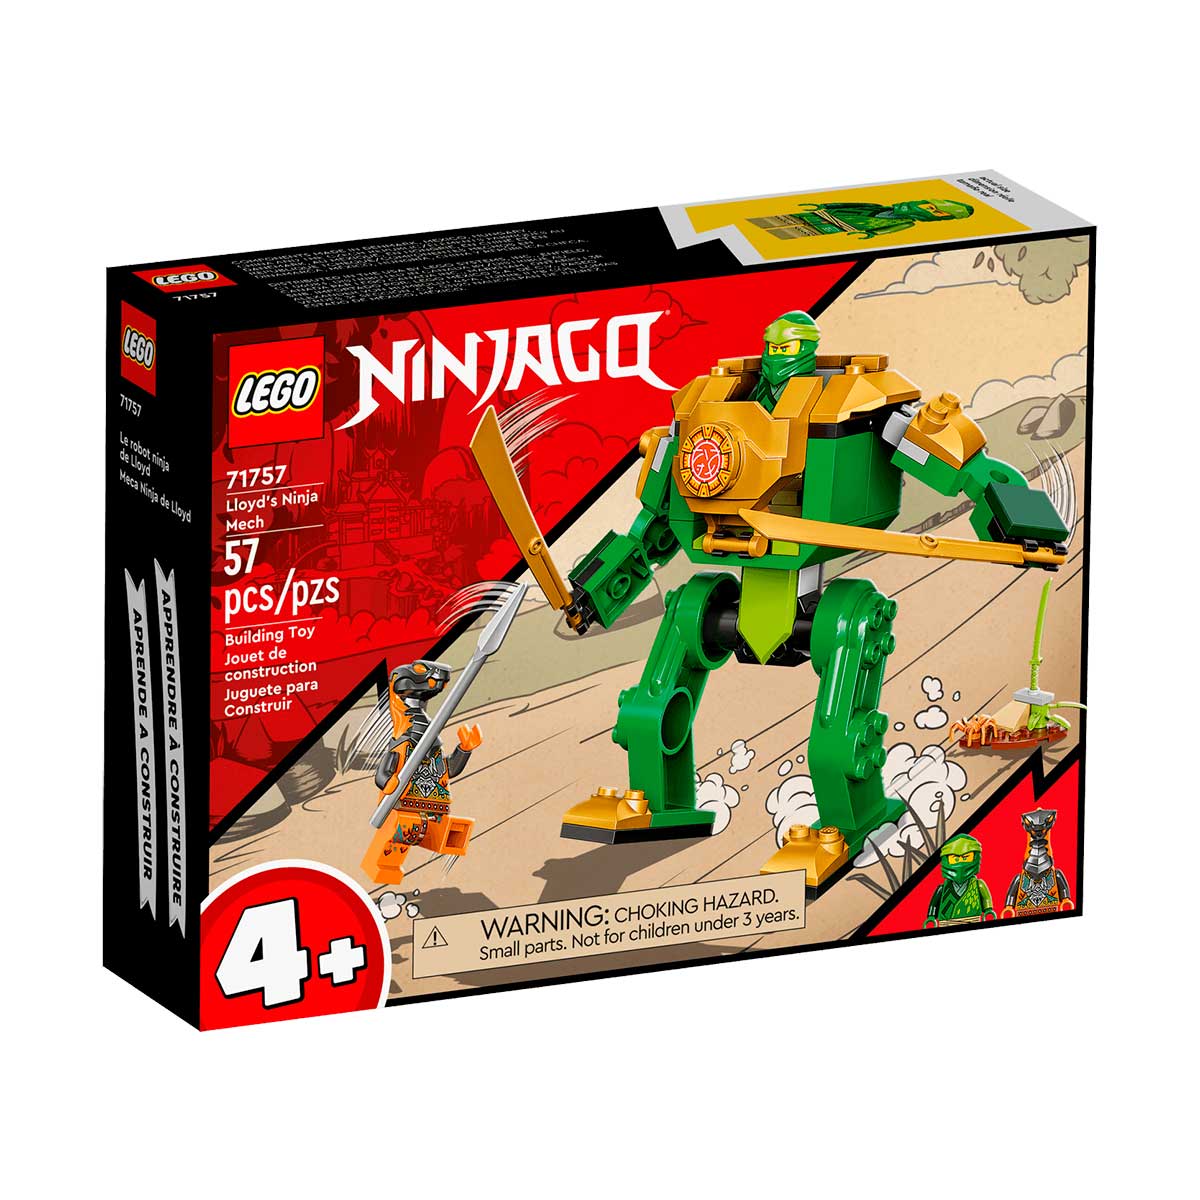 LEGO Ninjago - Robô Ninja do Lloyd - 71757